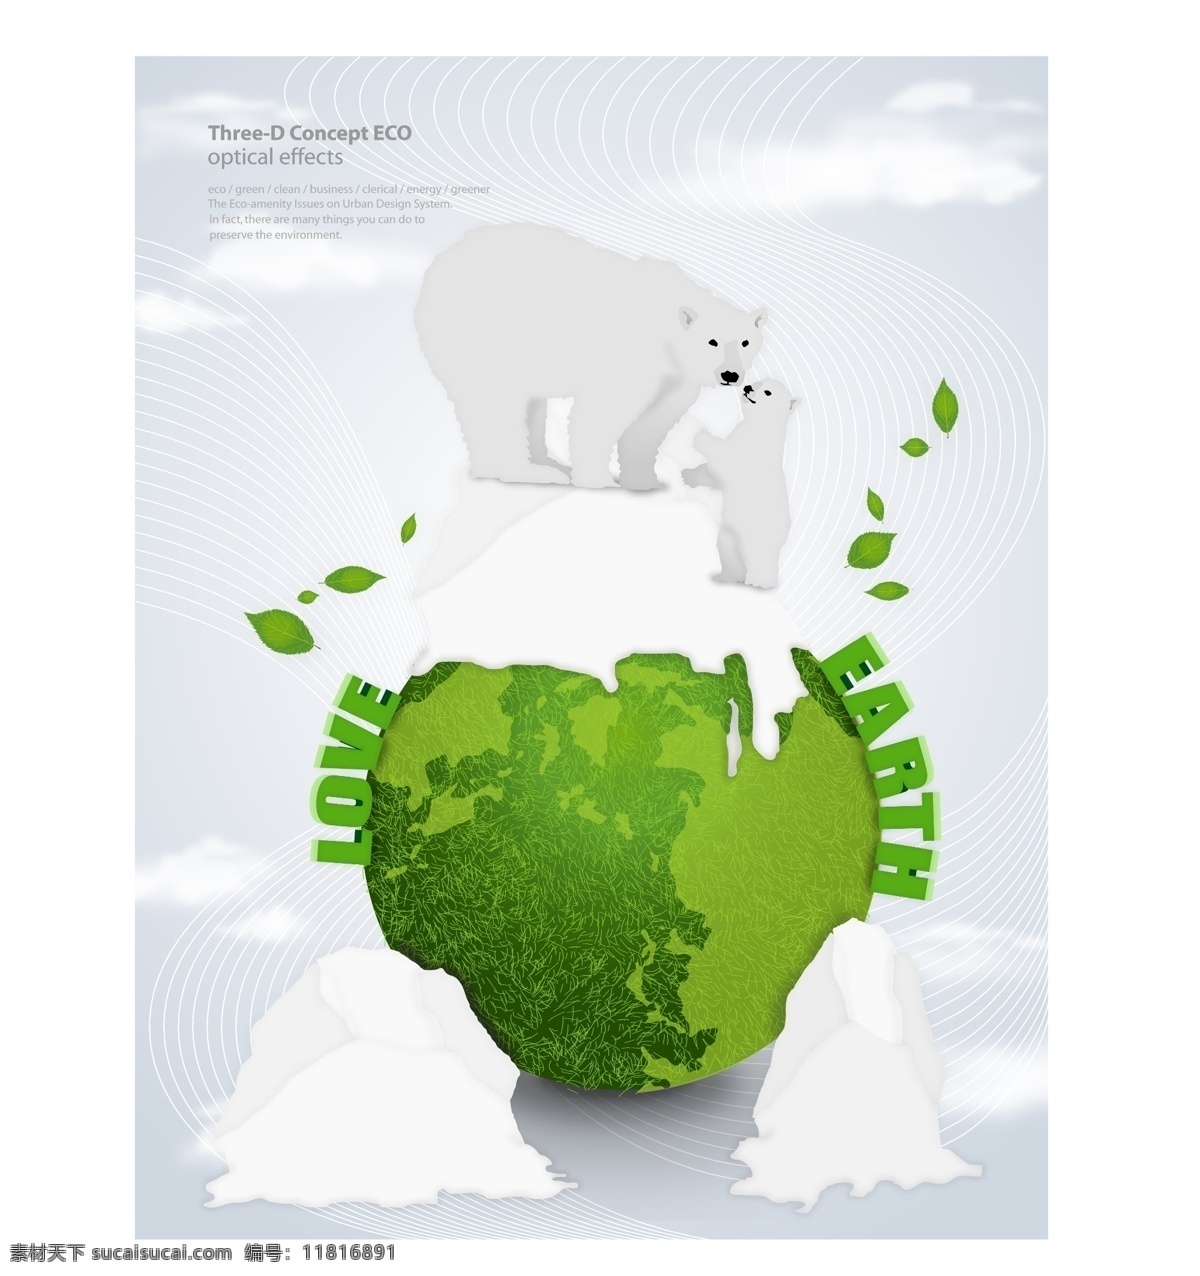 保护环境 北极熊 低碳生活 底纹背景 底纹边框 动物 环保 环境保护 节能 地球 绿色 背景 矢量 模板下载 地球绿色背景 星球 绿叶 树叶 叶子 卡通 漫画 清洁能源 节能减排 底纹 海报 环保公益海报